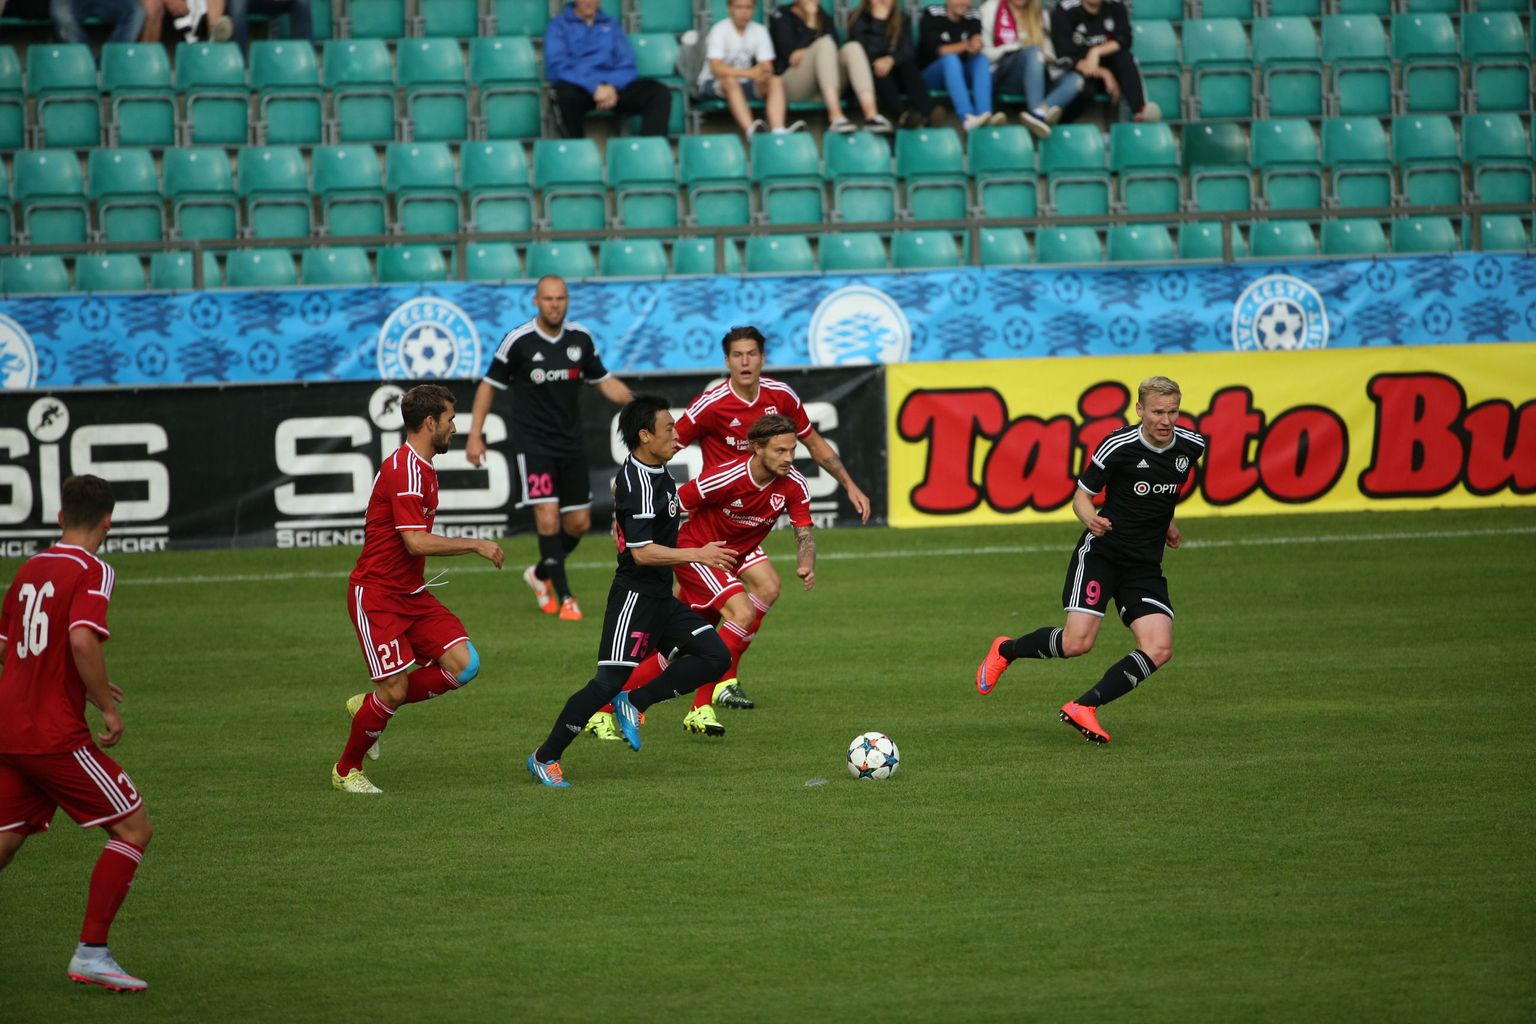 Nõmme Kalju kaotas Vaduzile kodus 0:2 ja langes eurosarjas konkurentsist.